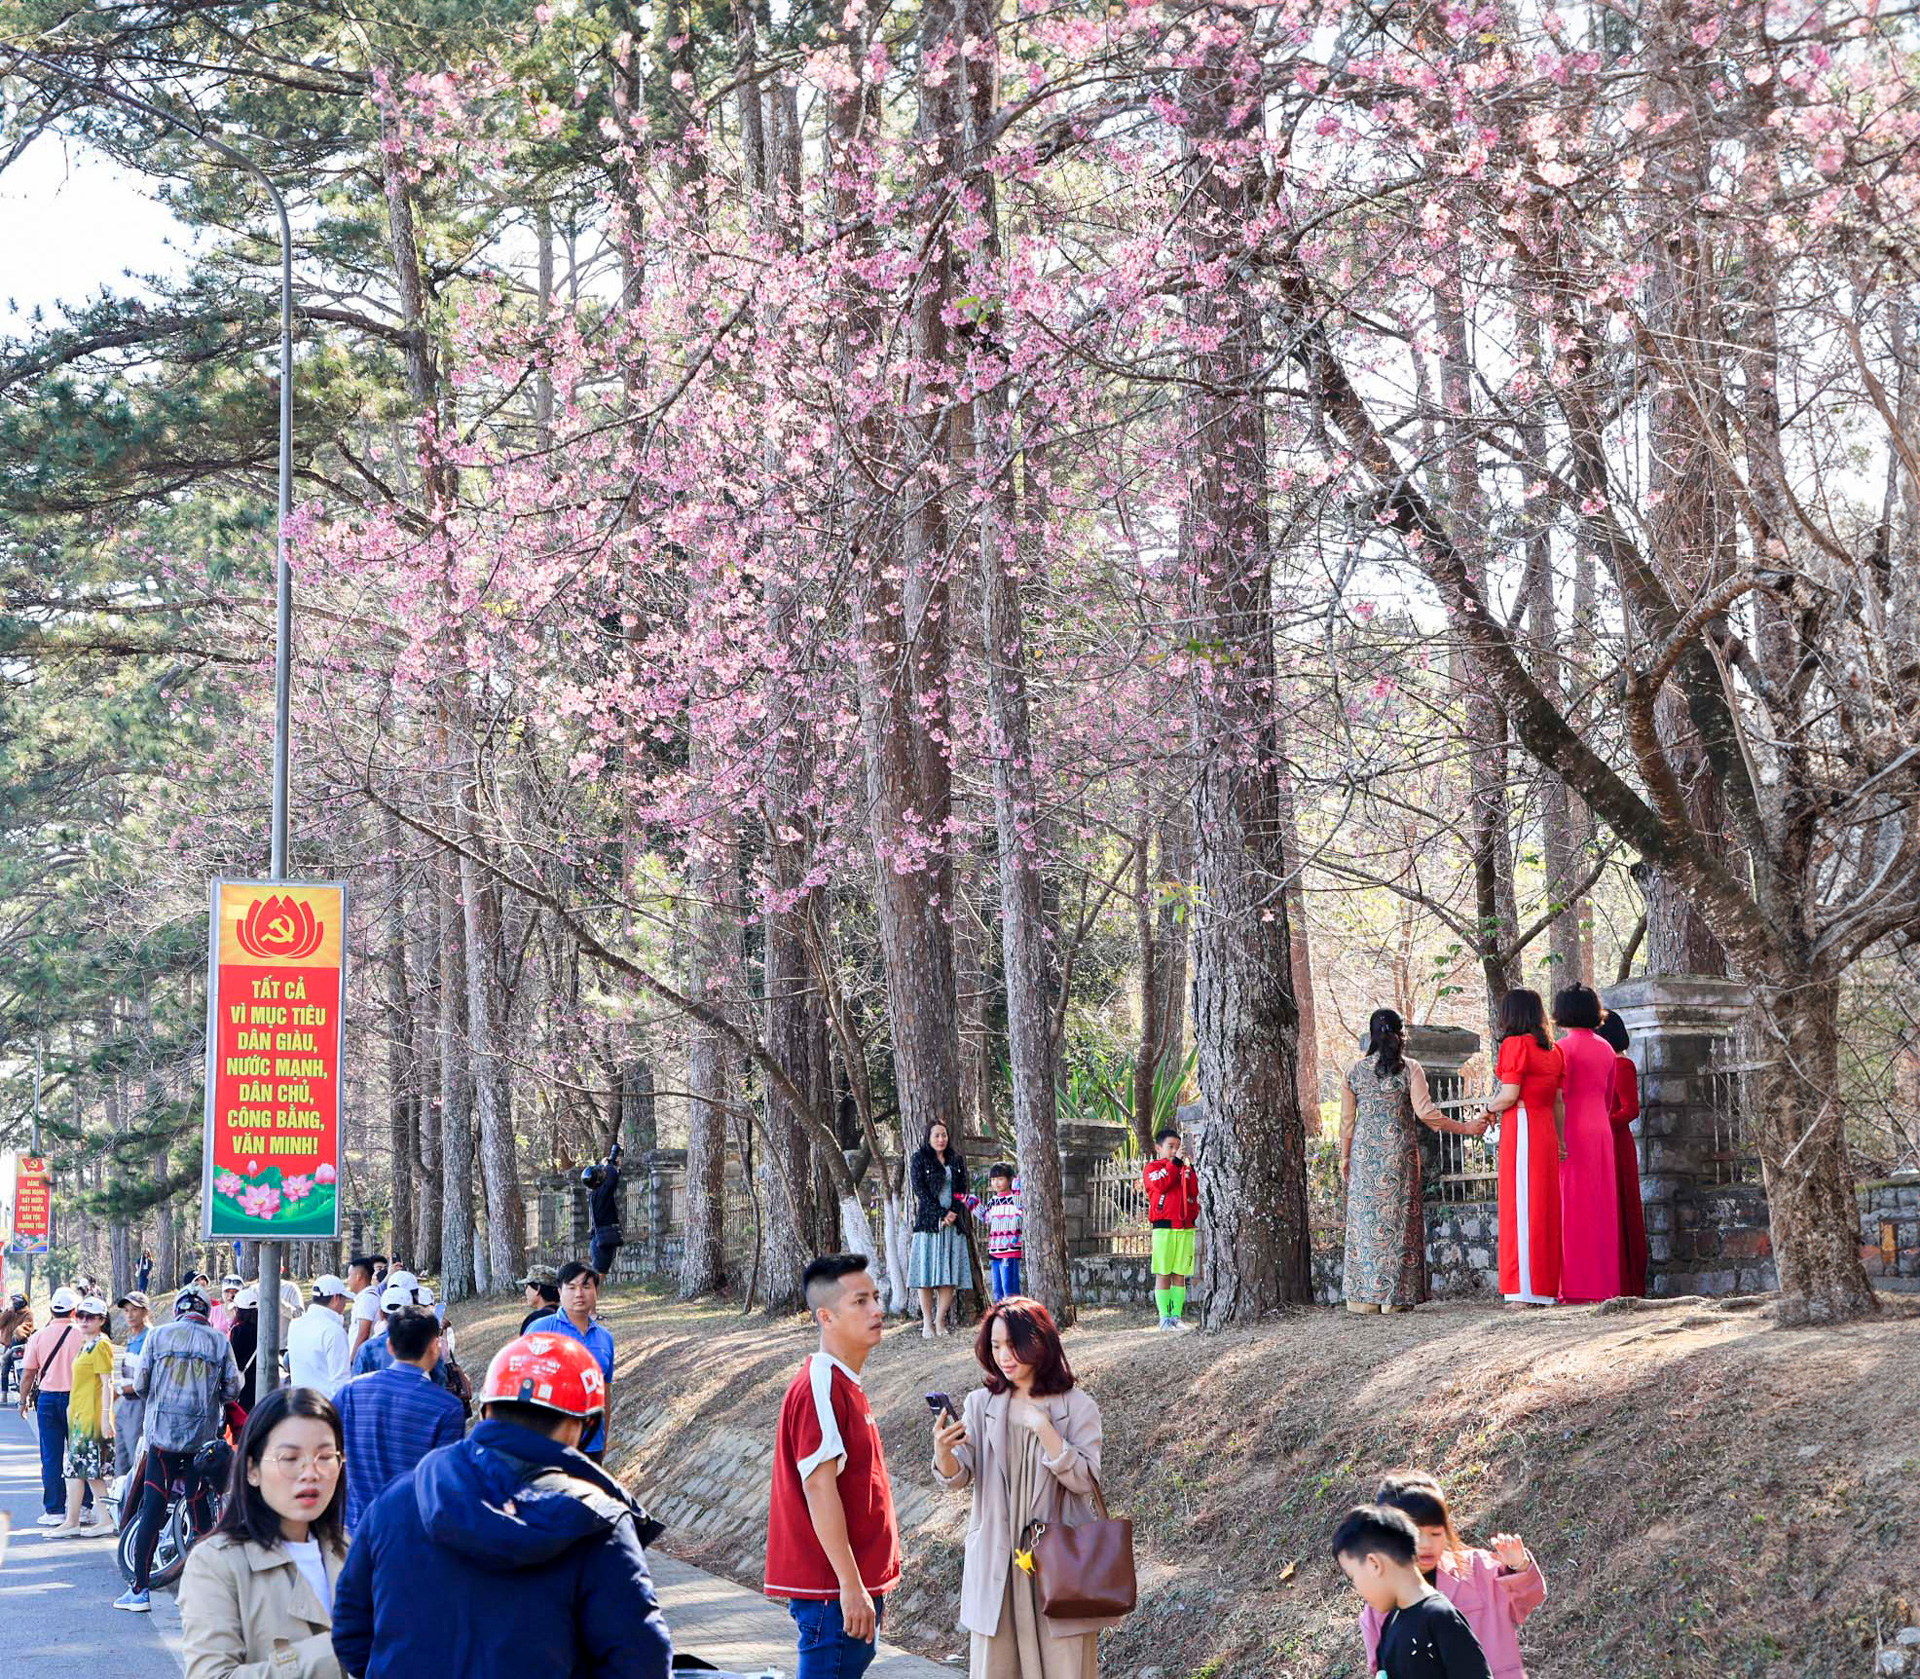 Tuyến đường Trần Hưng Đạo đang nhộn nhịp bởi hàng loạt cây
mai anh đào nở rộ chính là tâm điểm thu hút du khách mỗi ngày